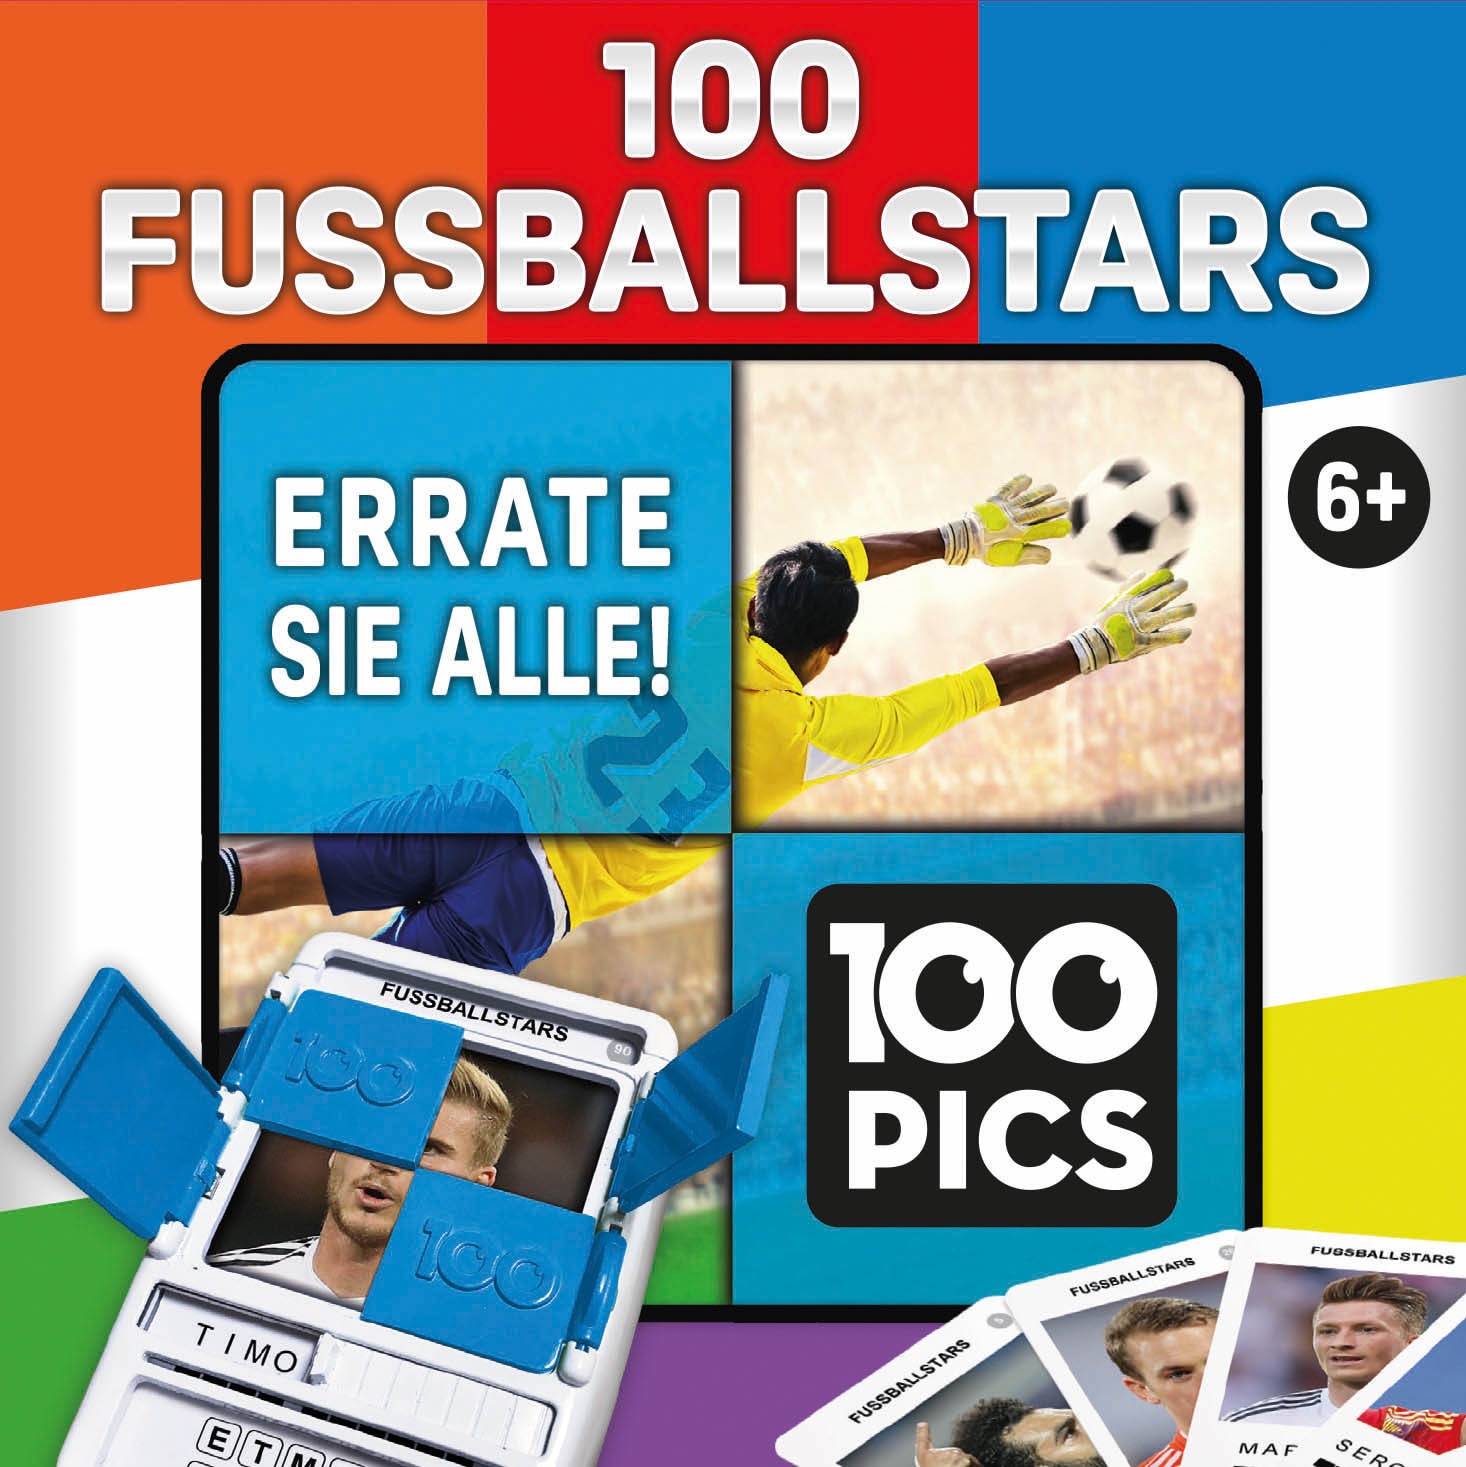 100 Pics Spiel »Fussballstars«